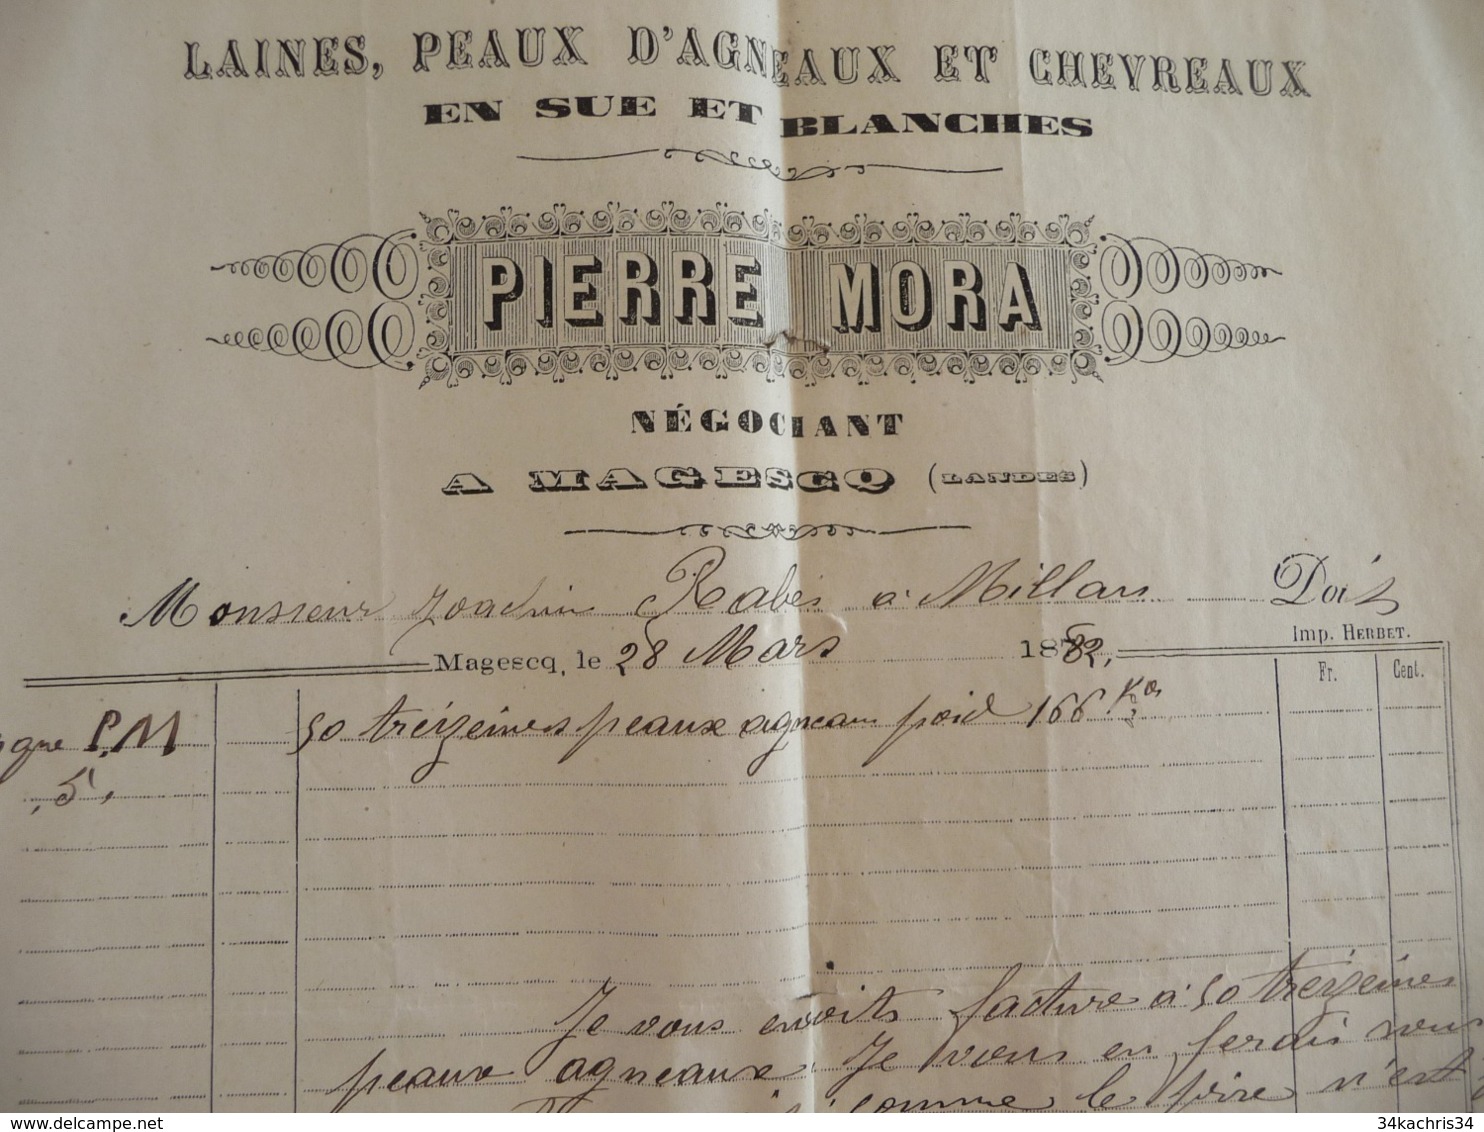 Facture Agriculture Pierre Mora Laines Peaux D'agneau Et Chevreaux 1882 Magesq Landes - Landbouw